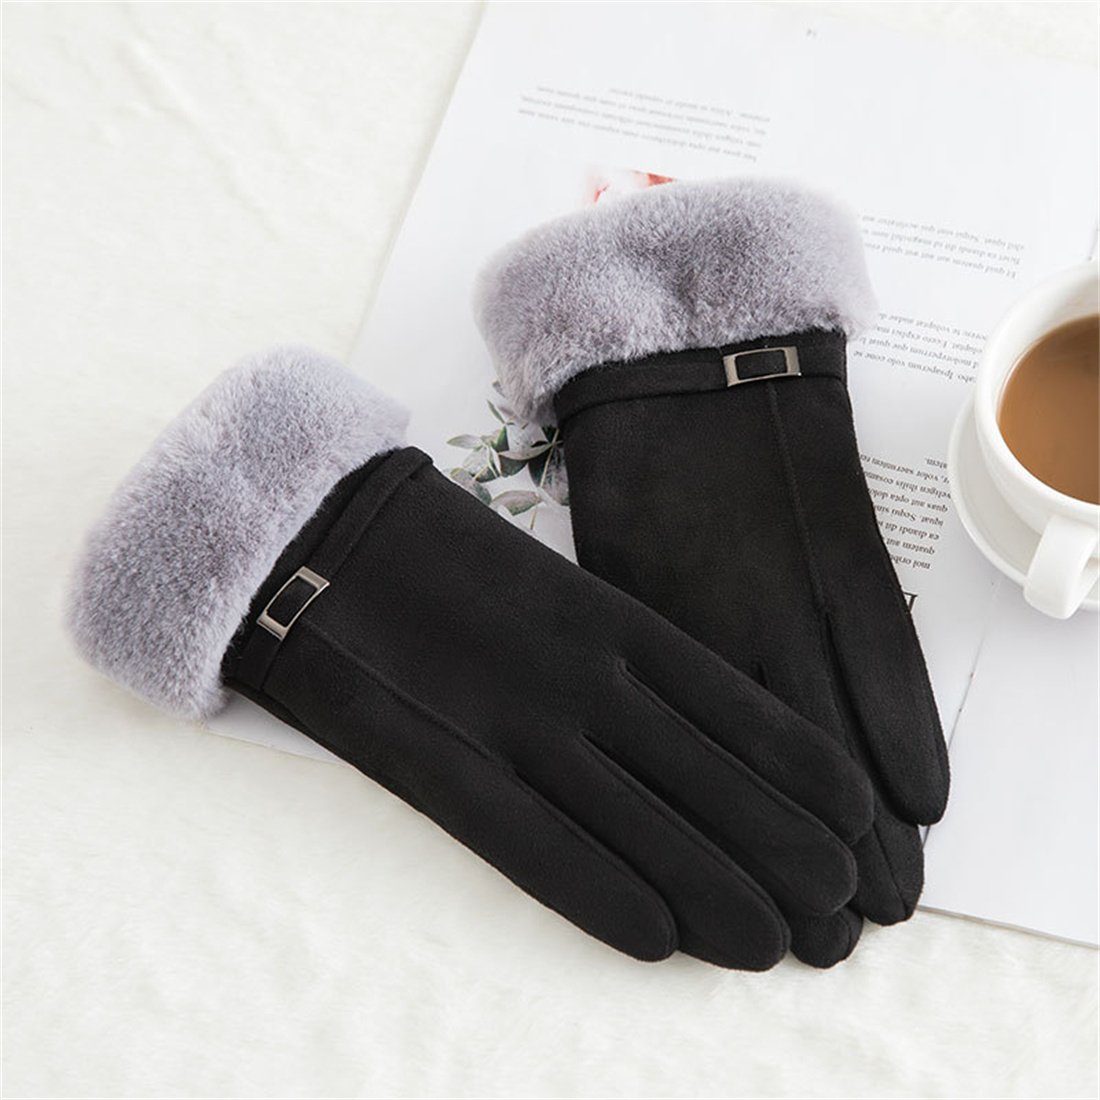 Schwarz mitTouchscreen,gepolsterte Damen-Reithandschuhe warme Winterhandschuhe DÖRÖY Fleecehandschuhe